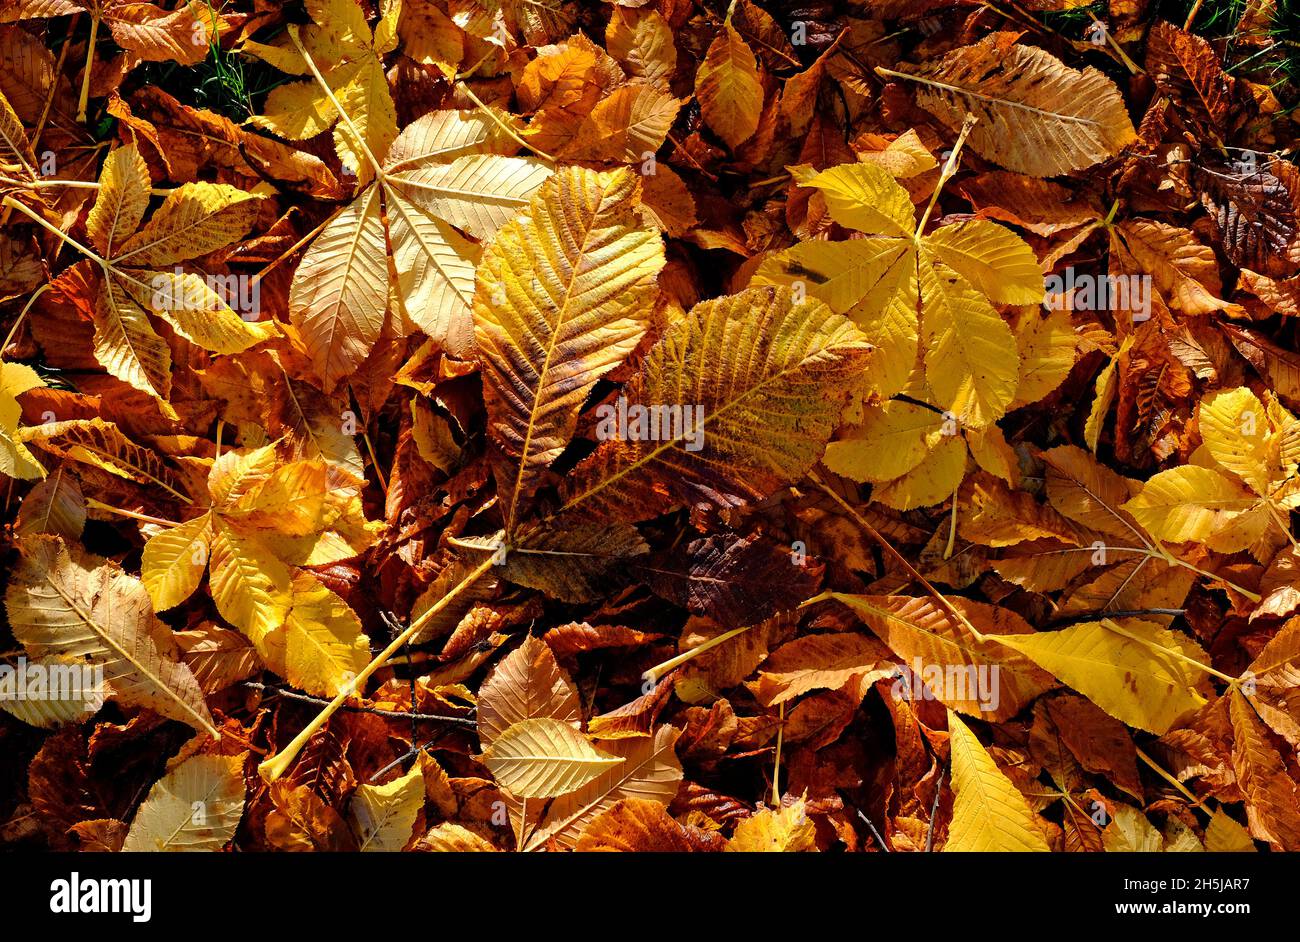 golden gelb orange Herbst Blätter Hintergrund Stockfoto